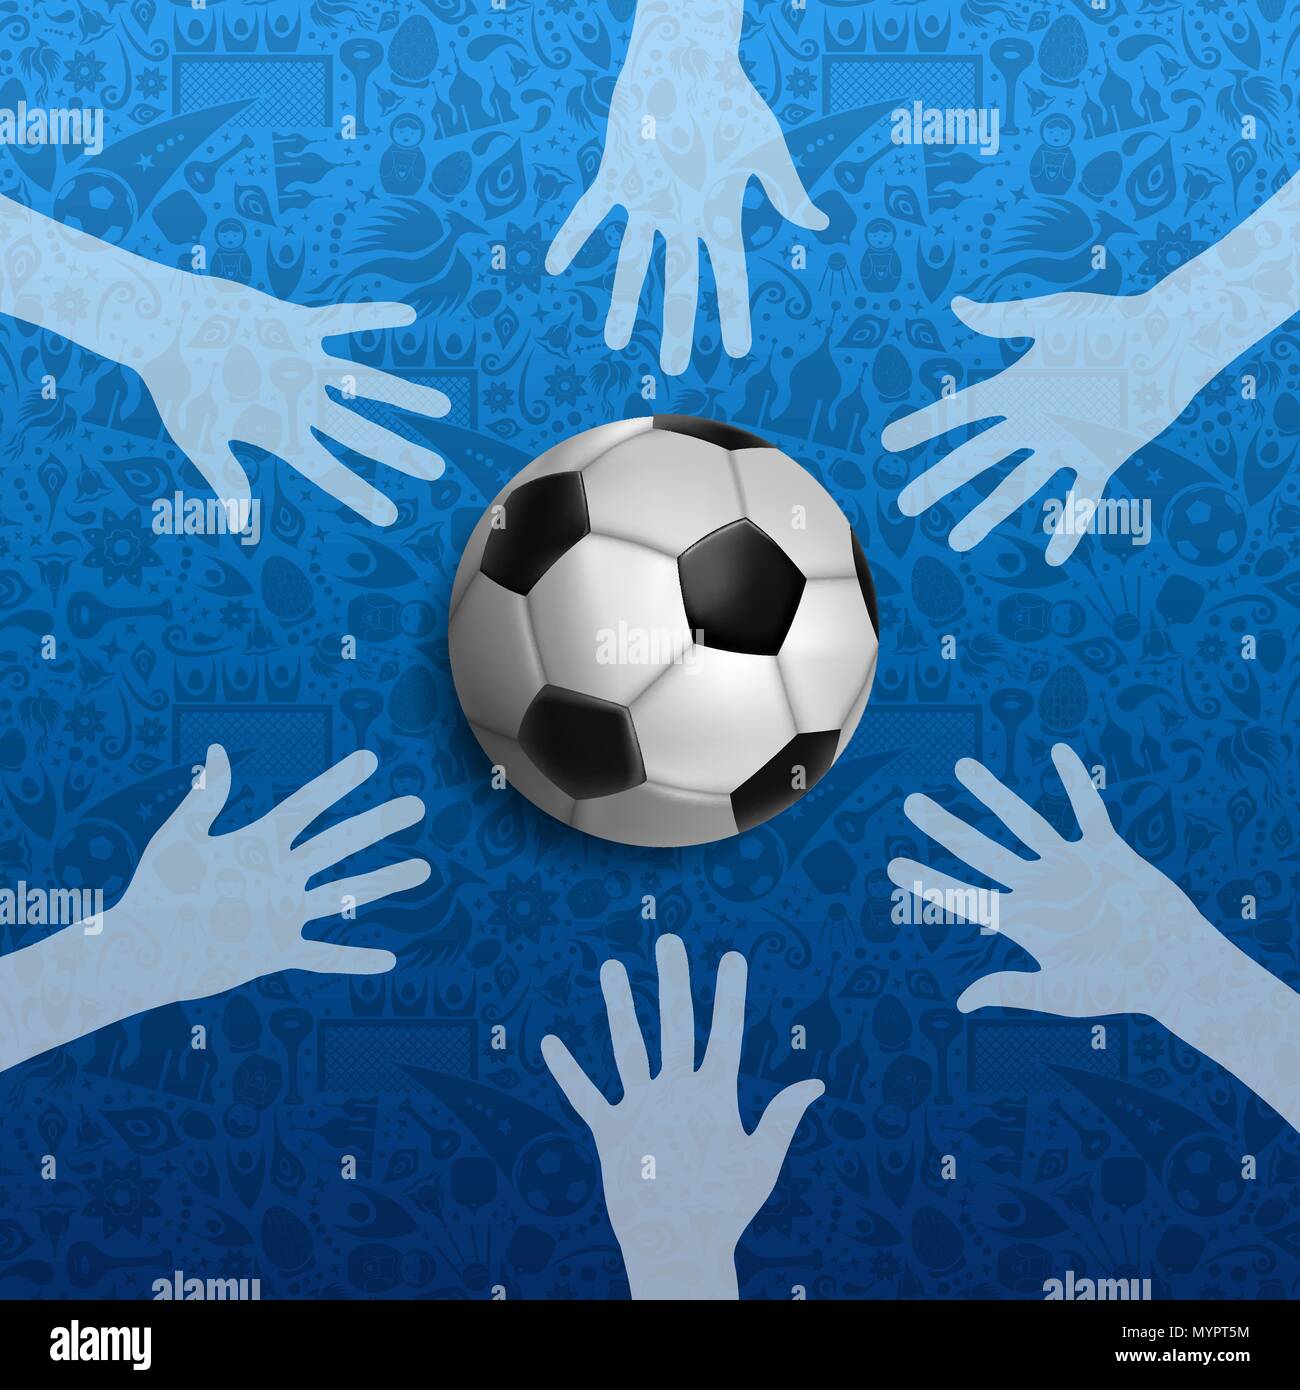 Fußball-Event Abbildung, Russisch sport spiel Hintergrund mit Menschen Hand und Fuß ball. United Gemeinschaft für Sport. EPS 10 Vektor. Stock Vektor